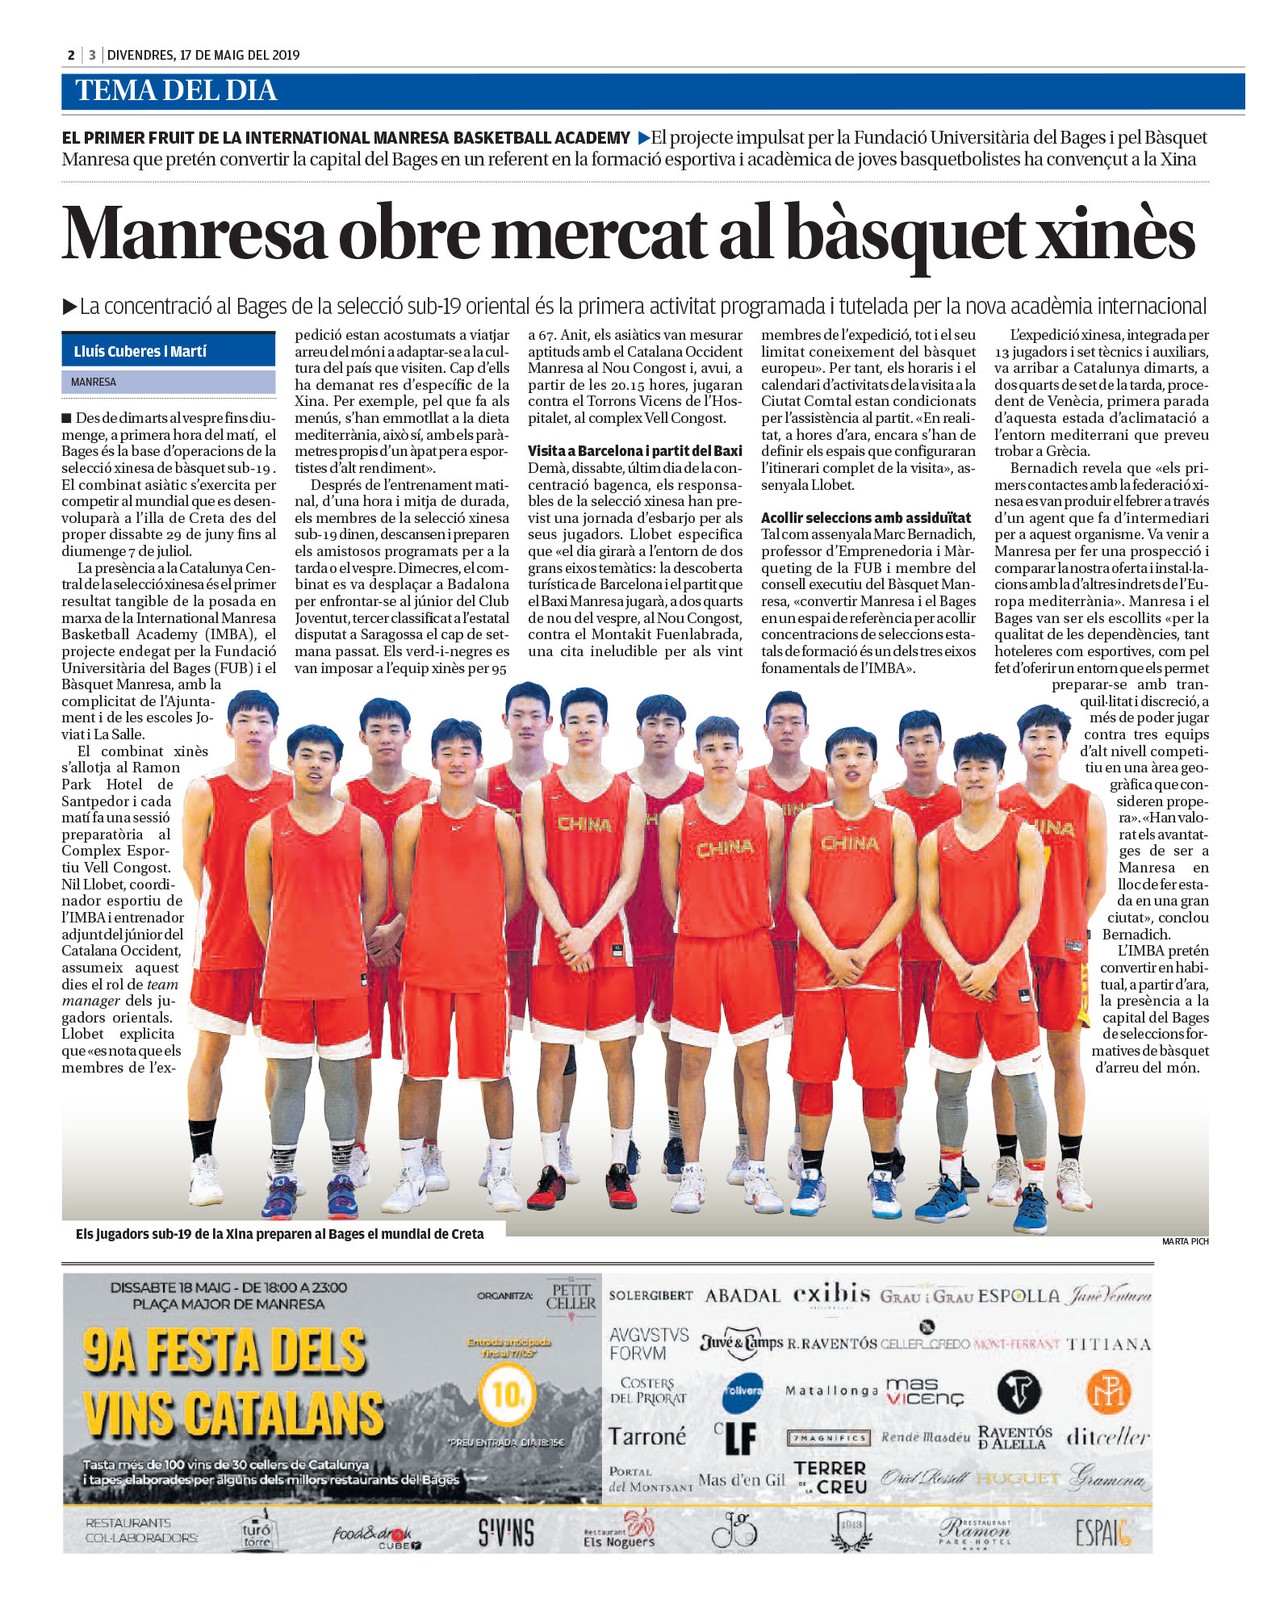 L'estada de la selecció xinesa sub-19 a Manresa té presència als mitjans